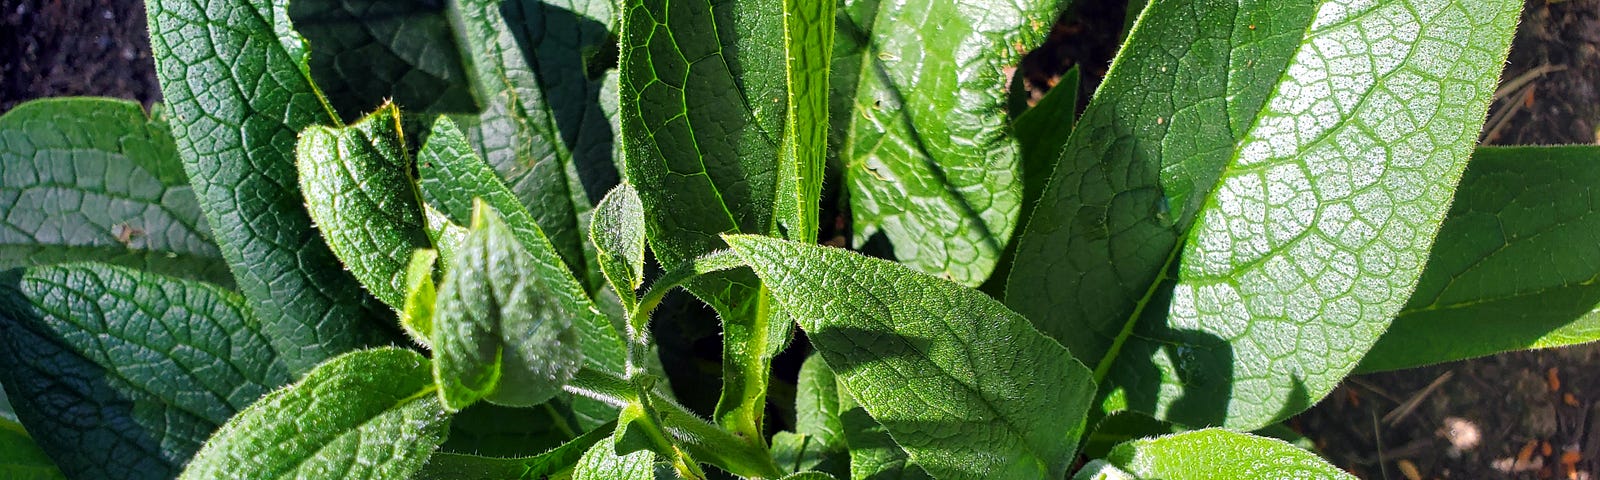 Closeup view of a comfrey plant